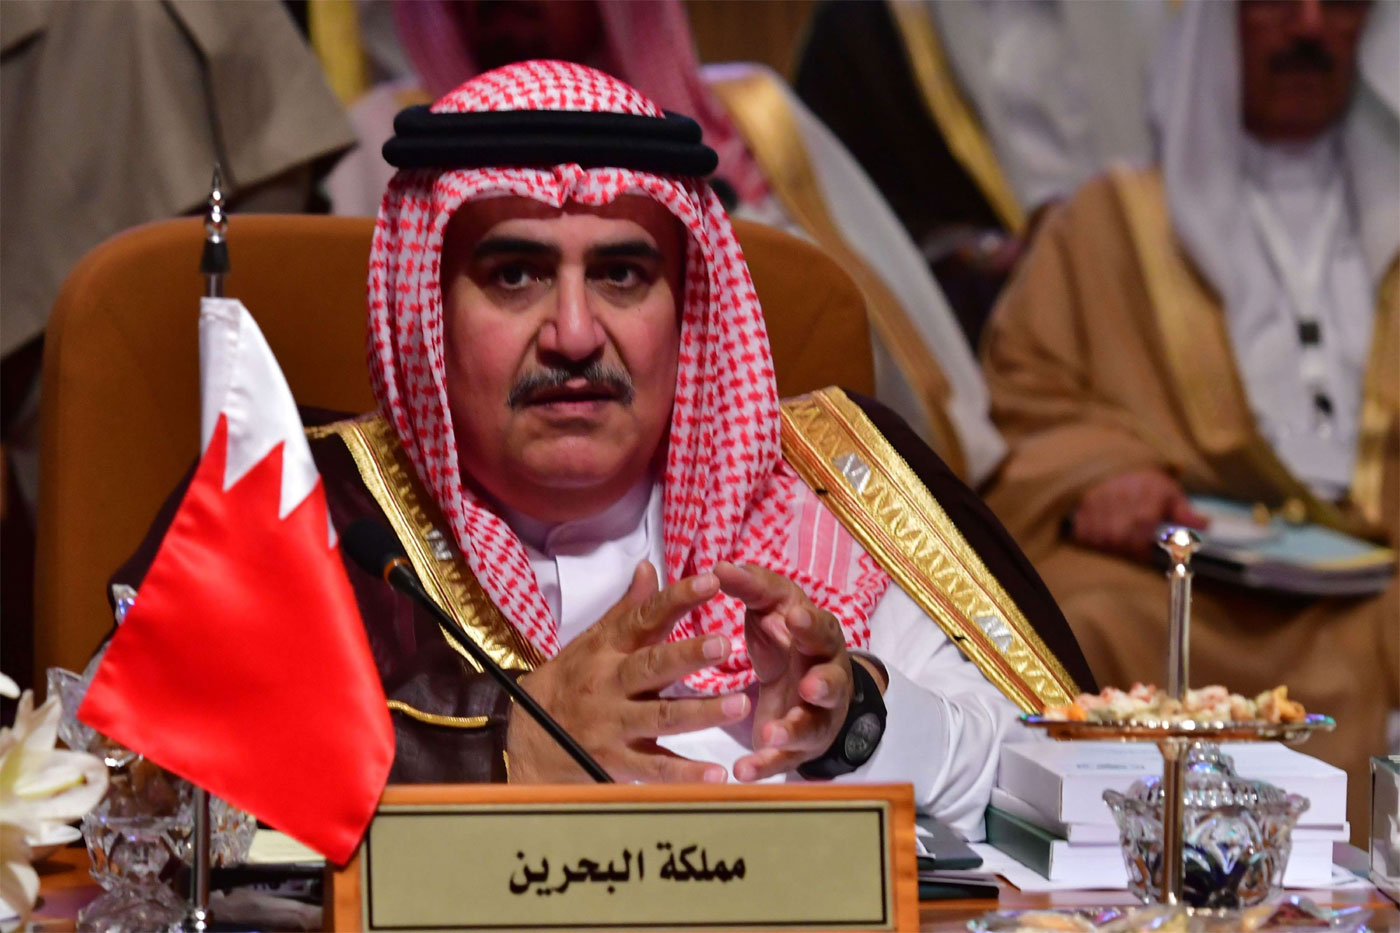 Bahrain's Minister of Foreign Affairs Khalid bin Ahmed Al Khalifa